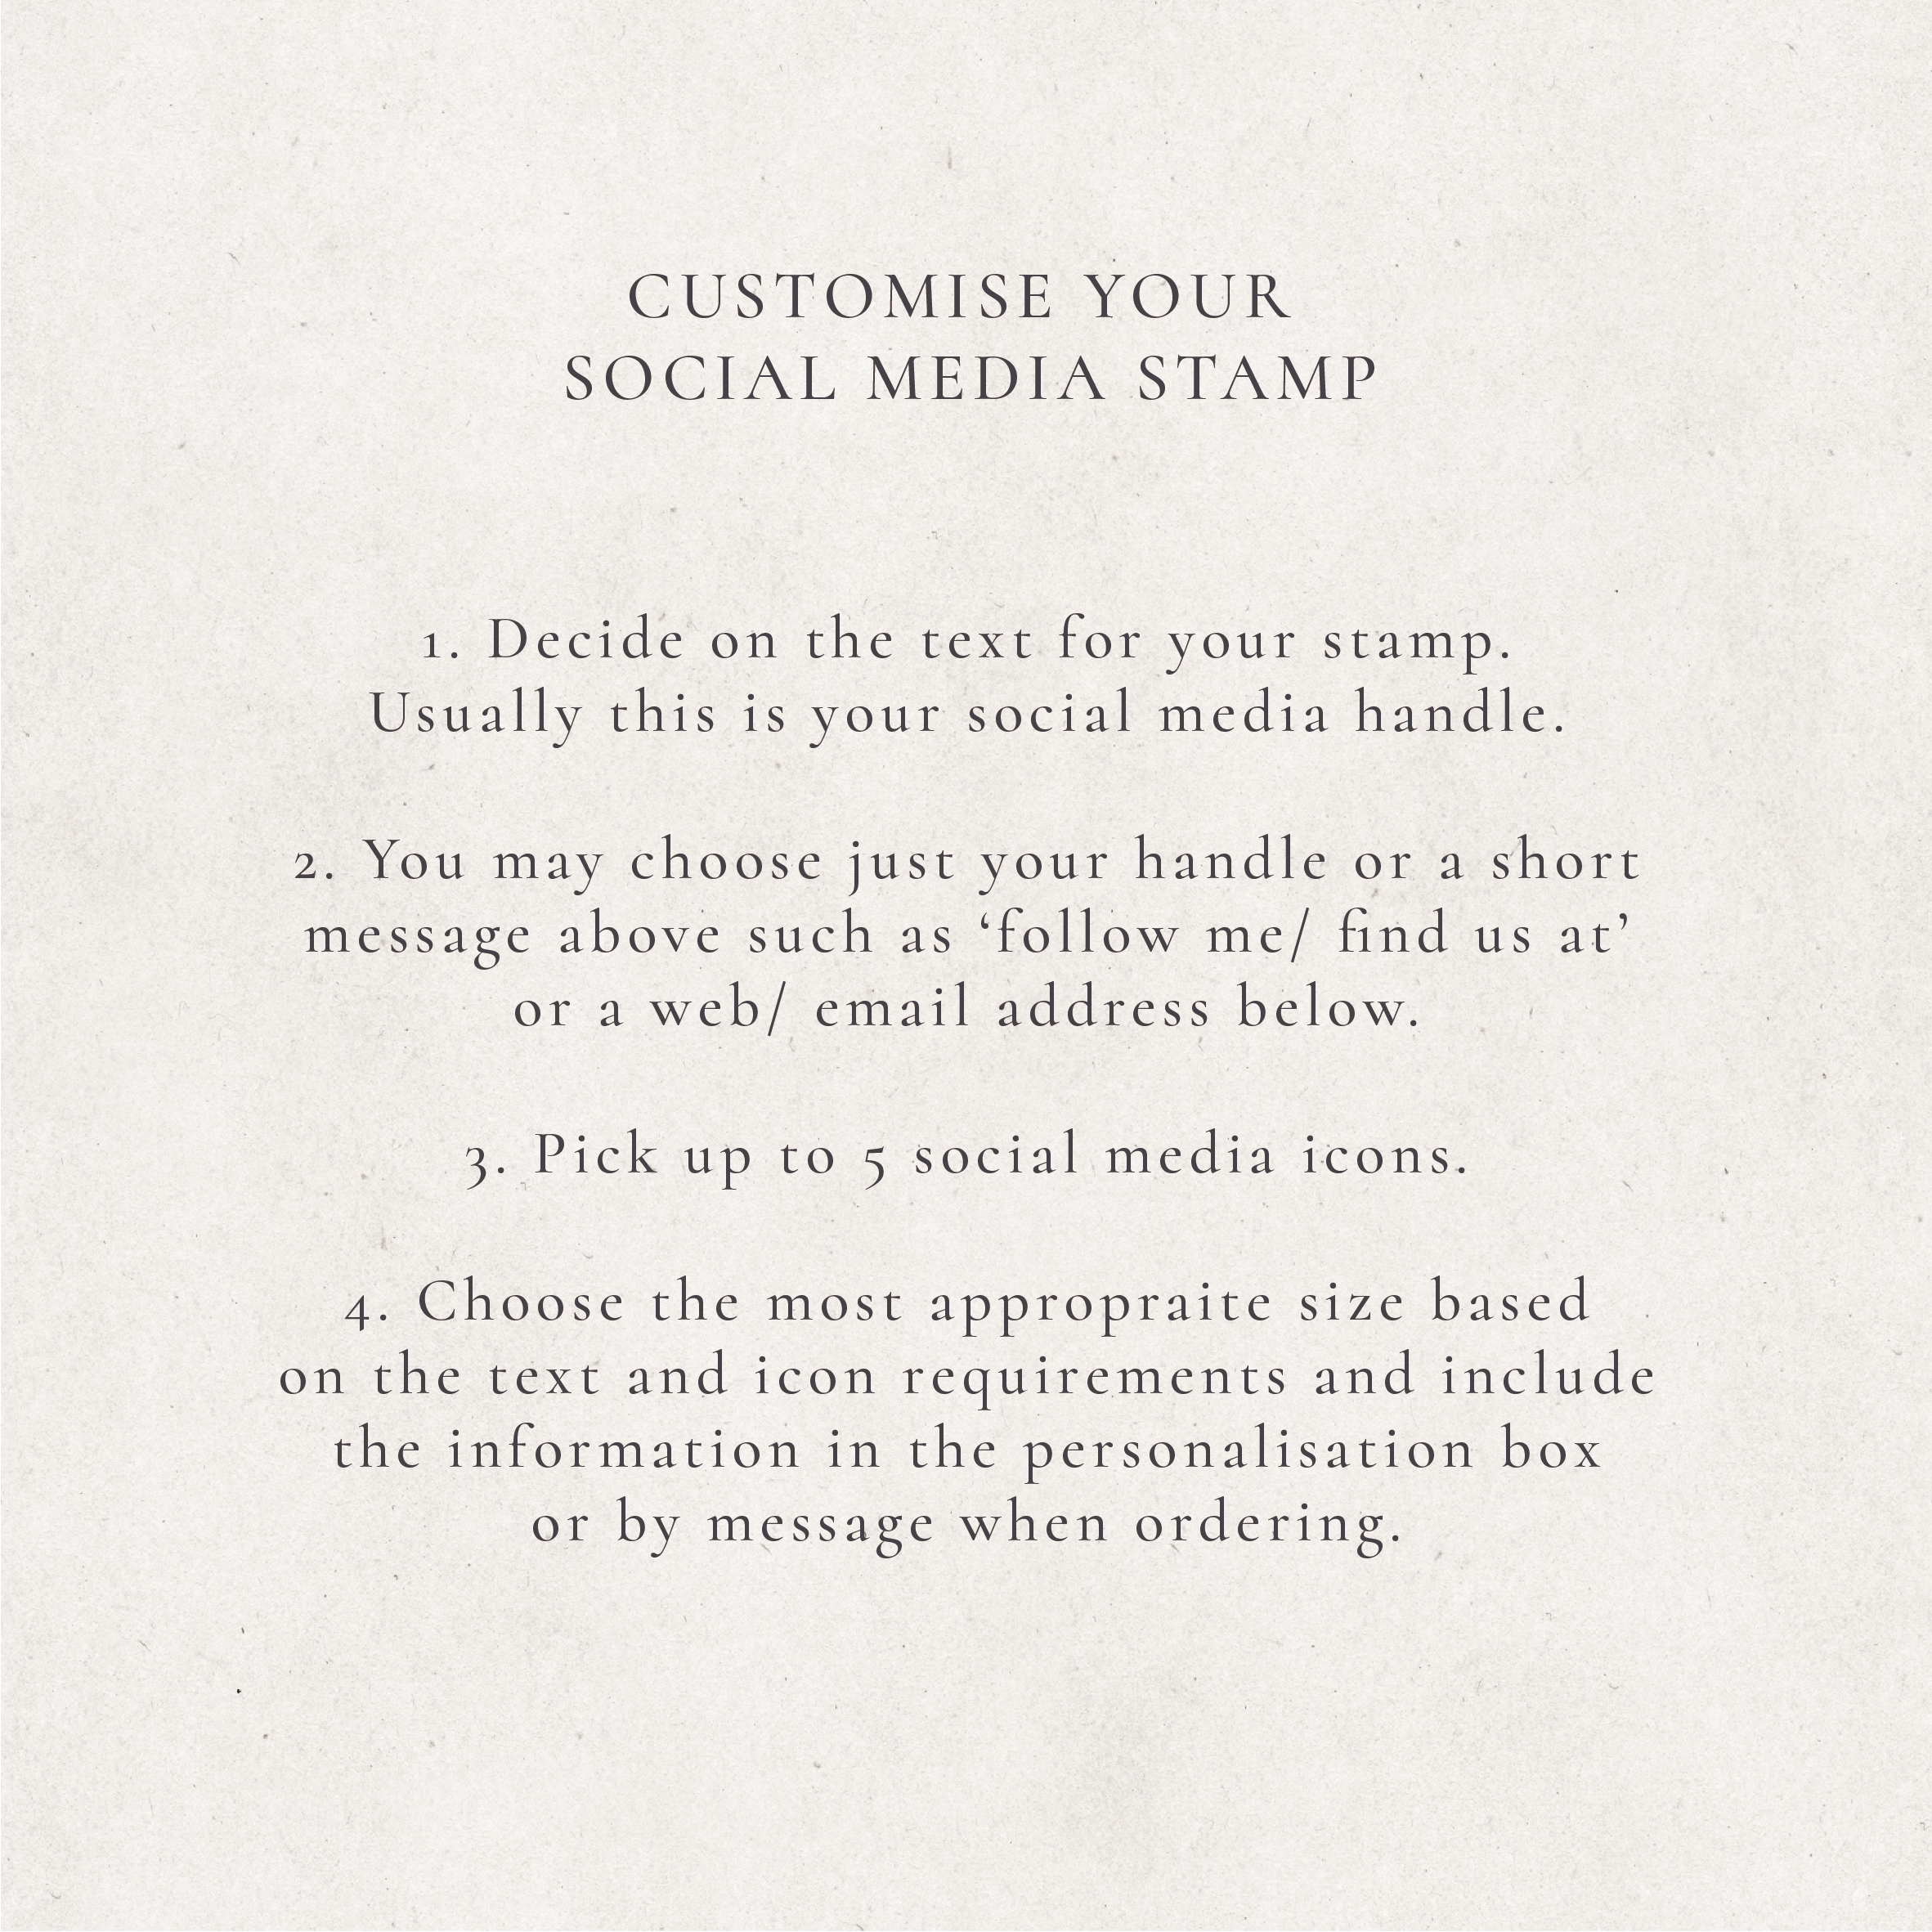 Social Media Stamp